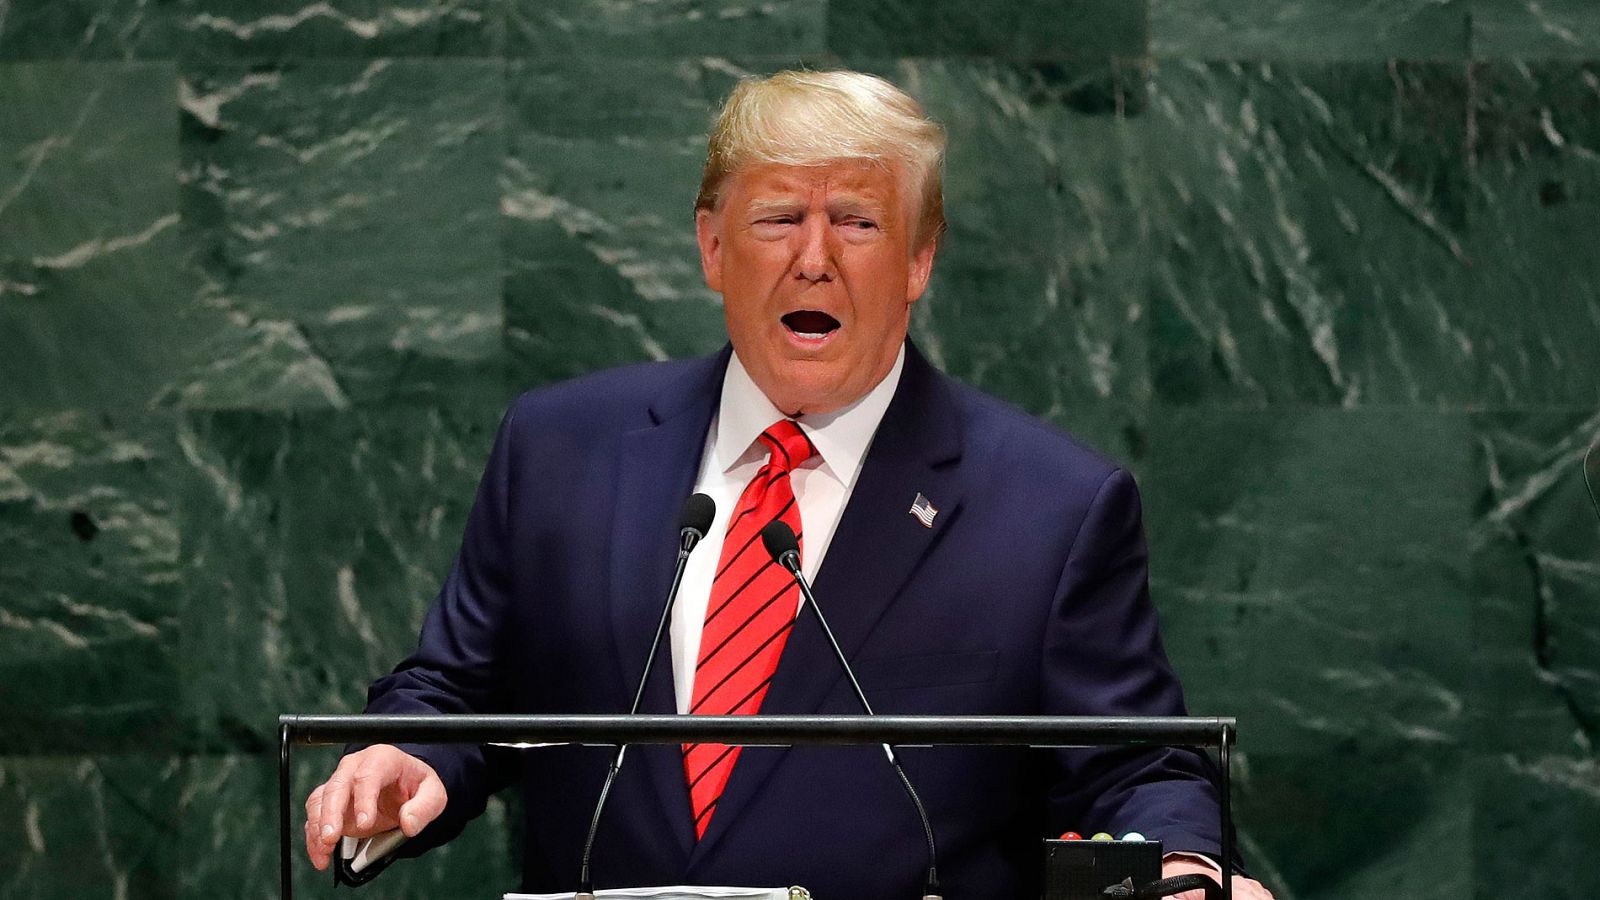 Asamblea de la ONU | Trump: "El futuro no pertenece a los globalistas, pertenece a los nacionalistas" - RTVE.es